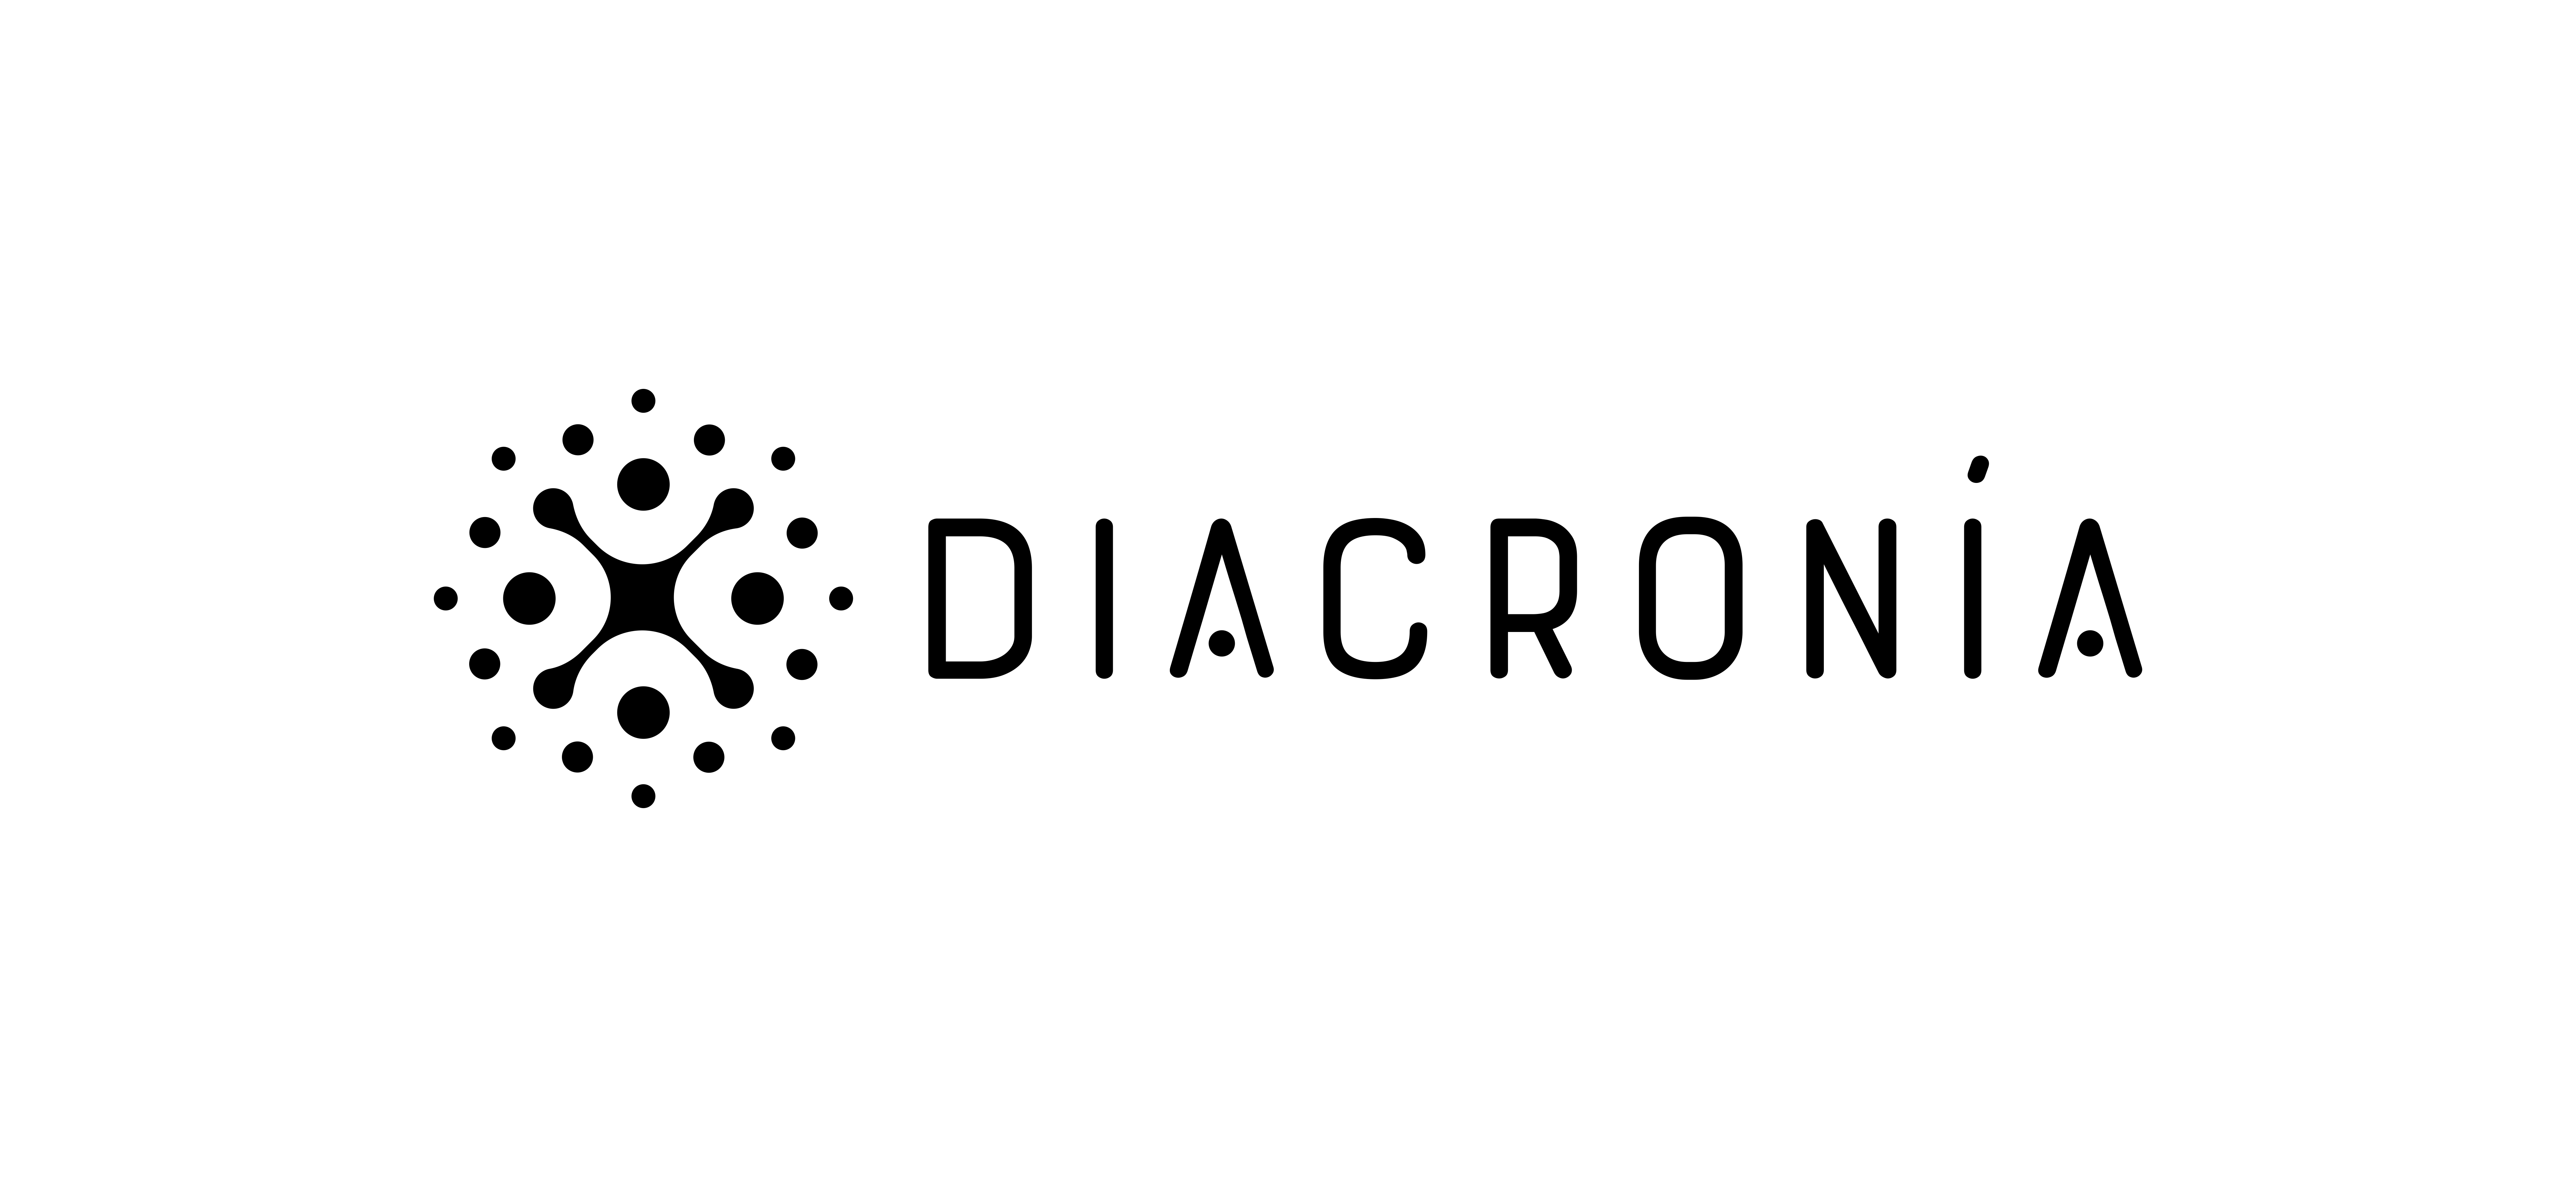 Diacronía